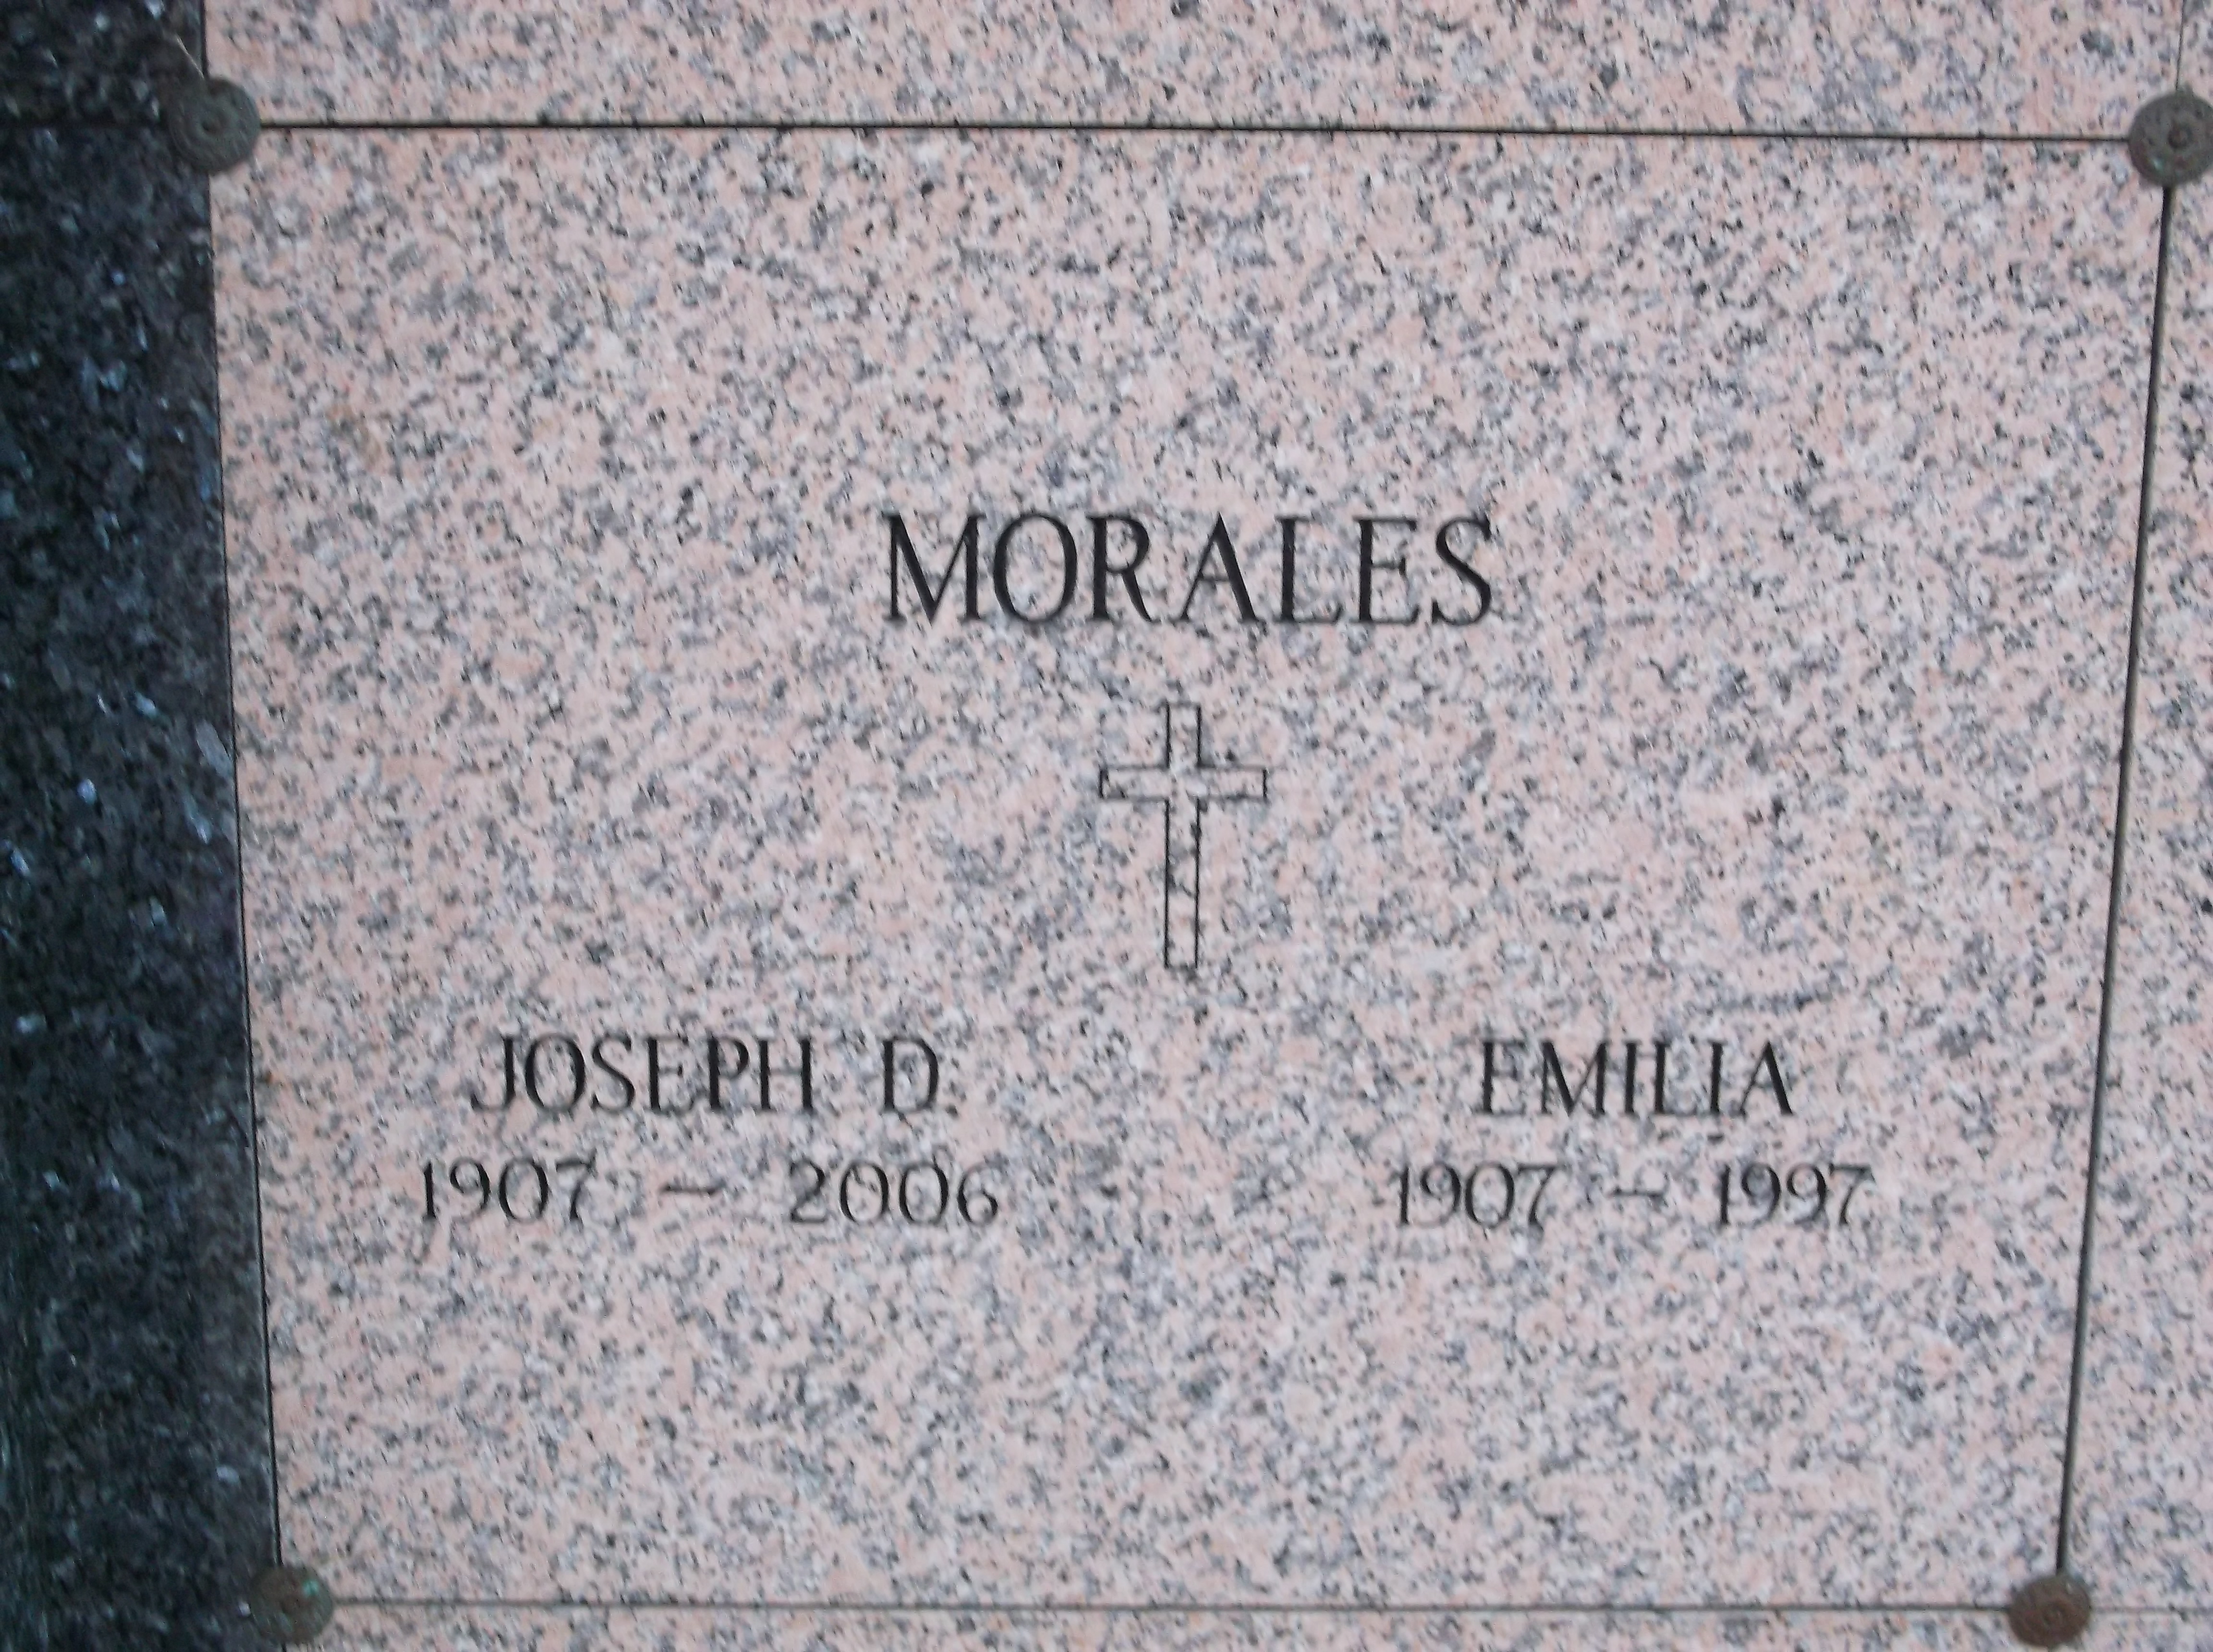 Emilia Morales